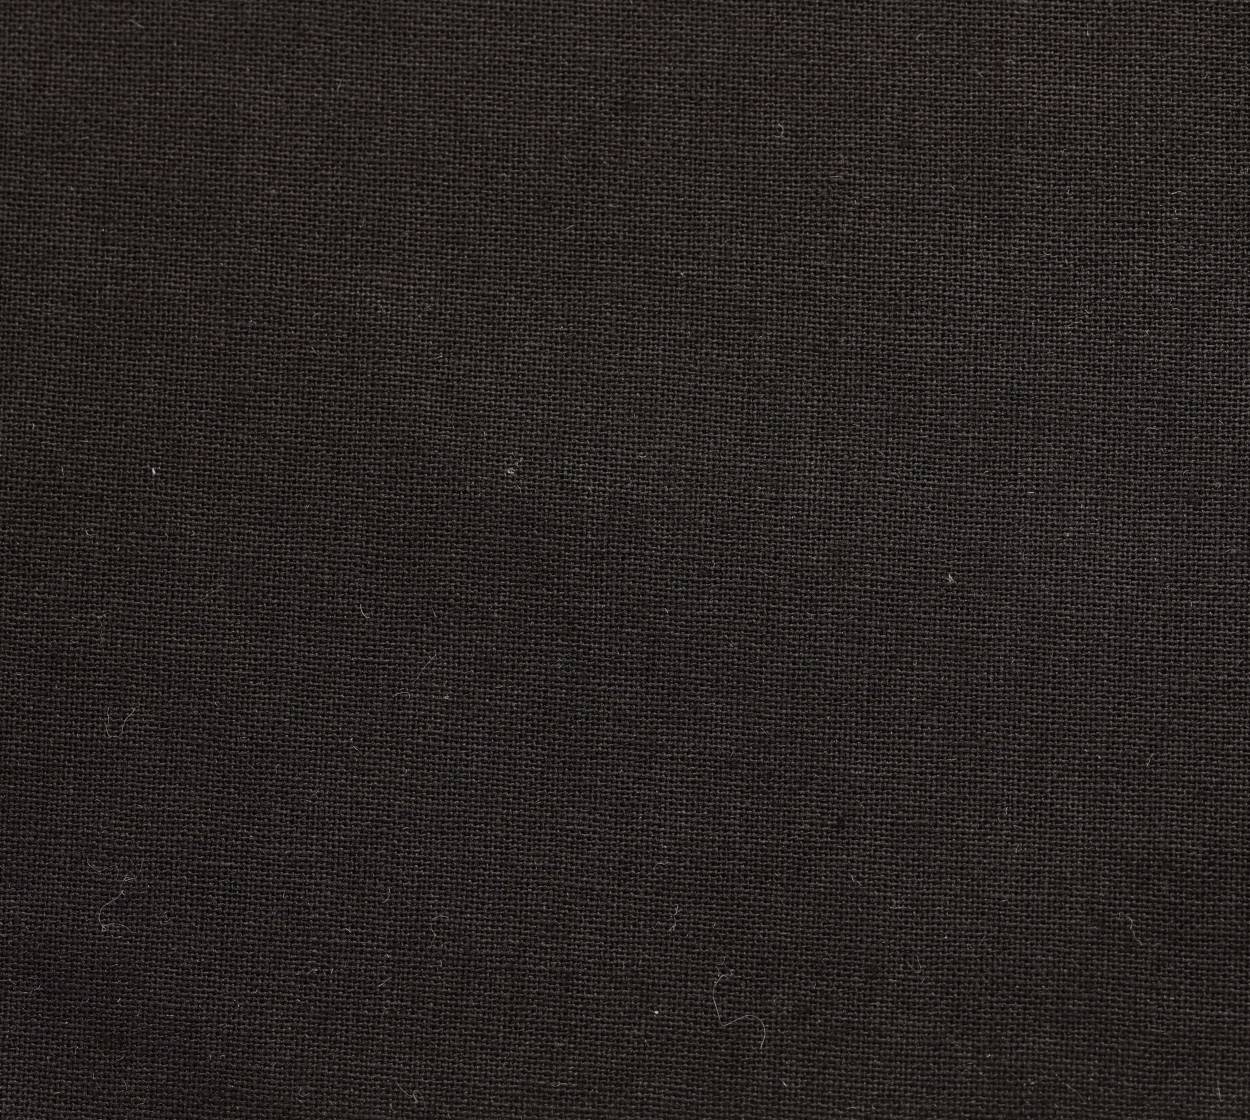 Nessel Baumwolle, schwarz, 3,20 m breit, 6N20 im Stamm online Store München